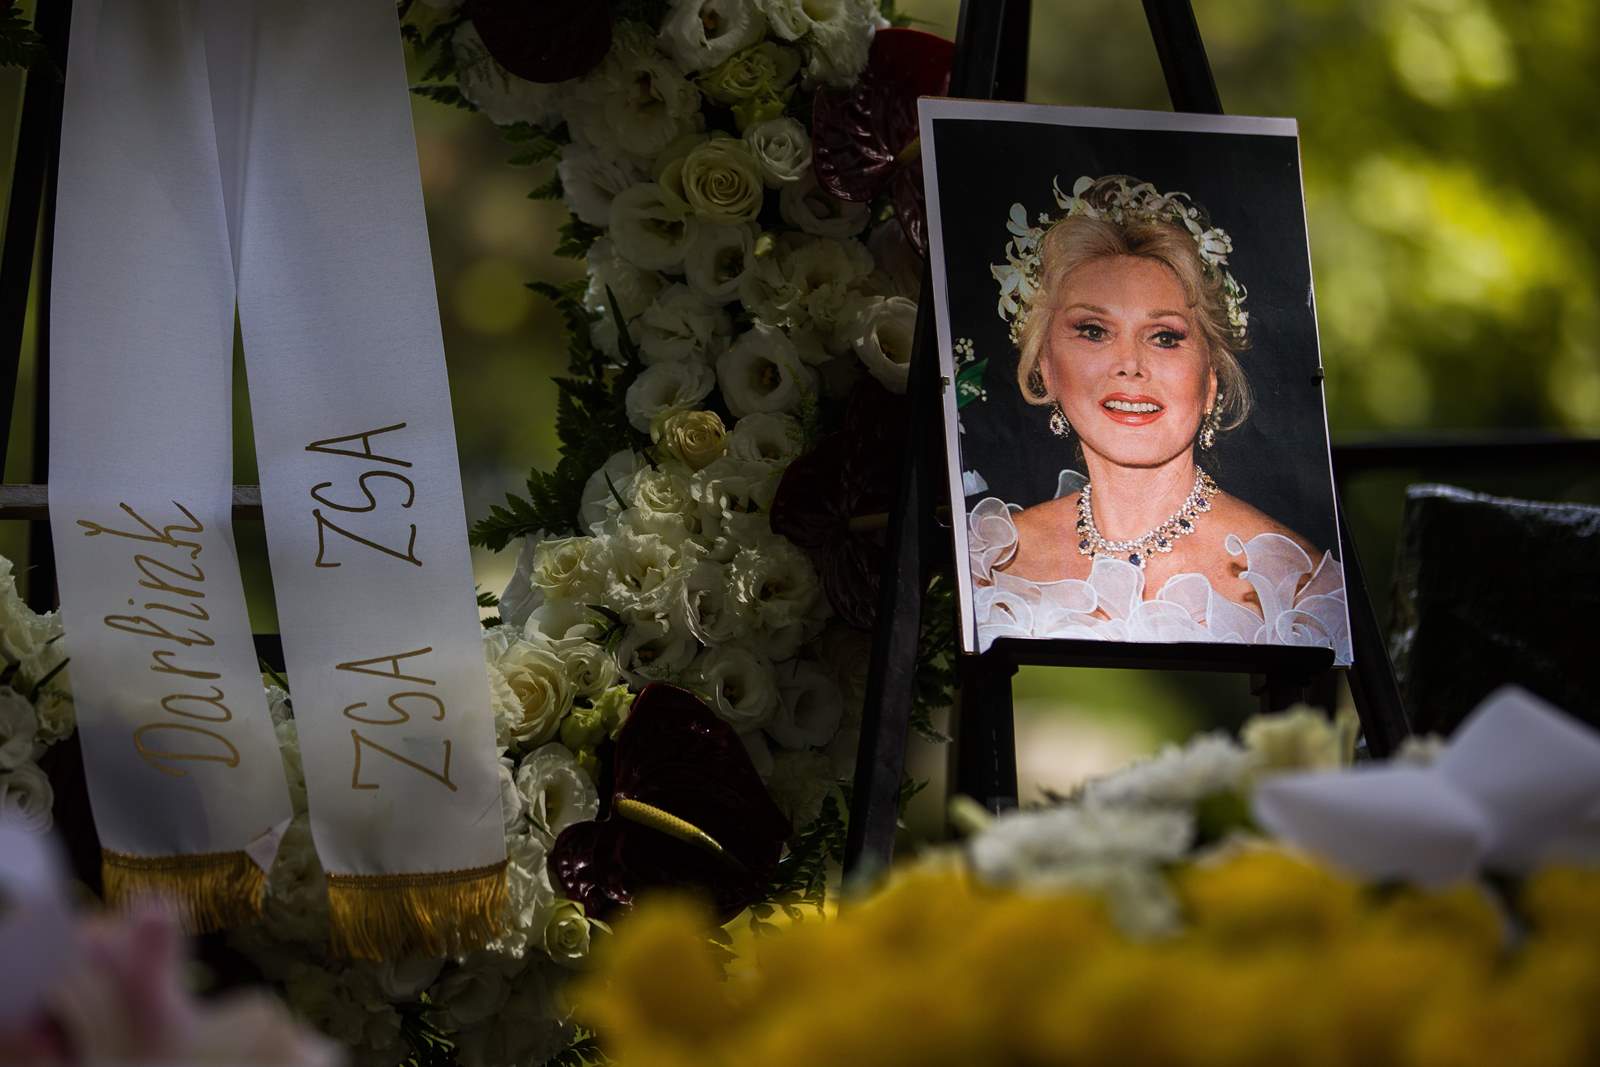 Zsazsa Gábor 的骨灰于周二安葬在布达佩斯的 Fiumei Street 墓地，距她去世近五年。